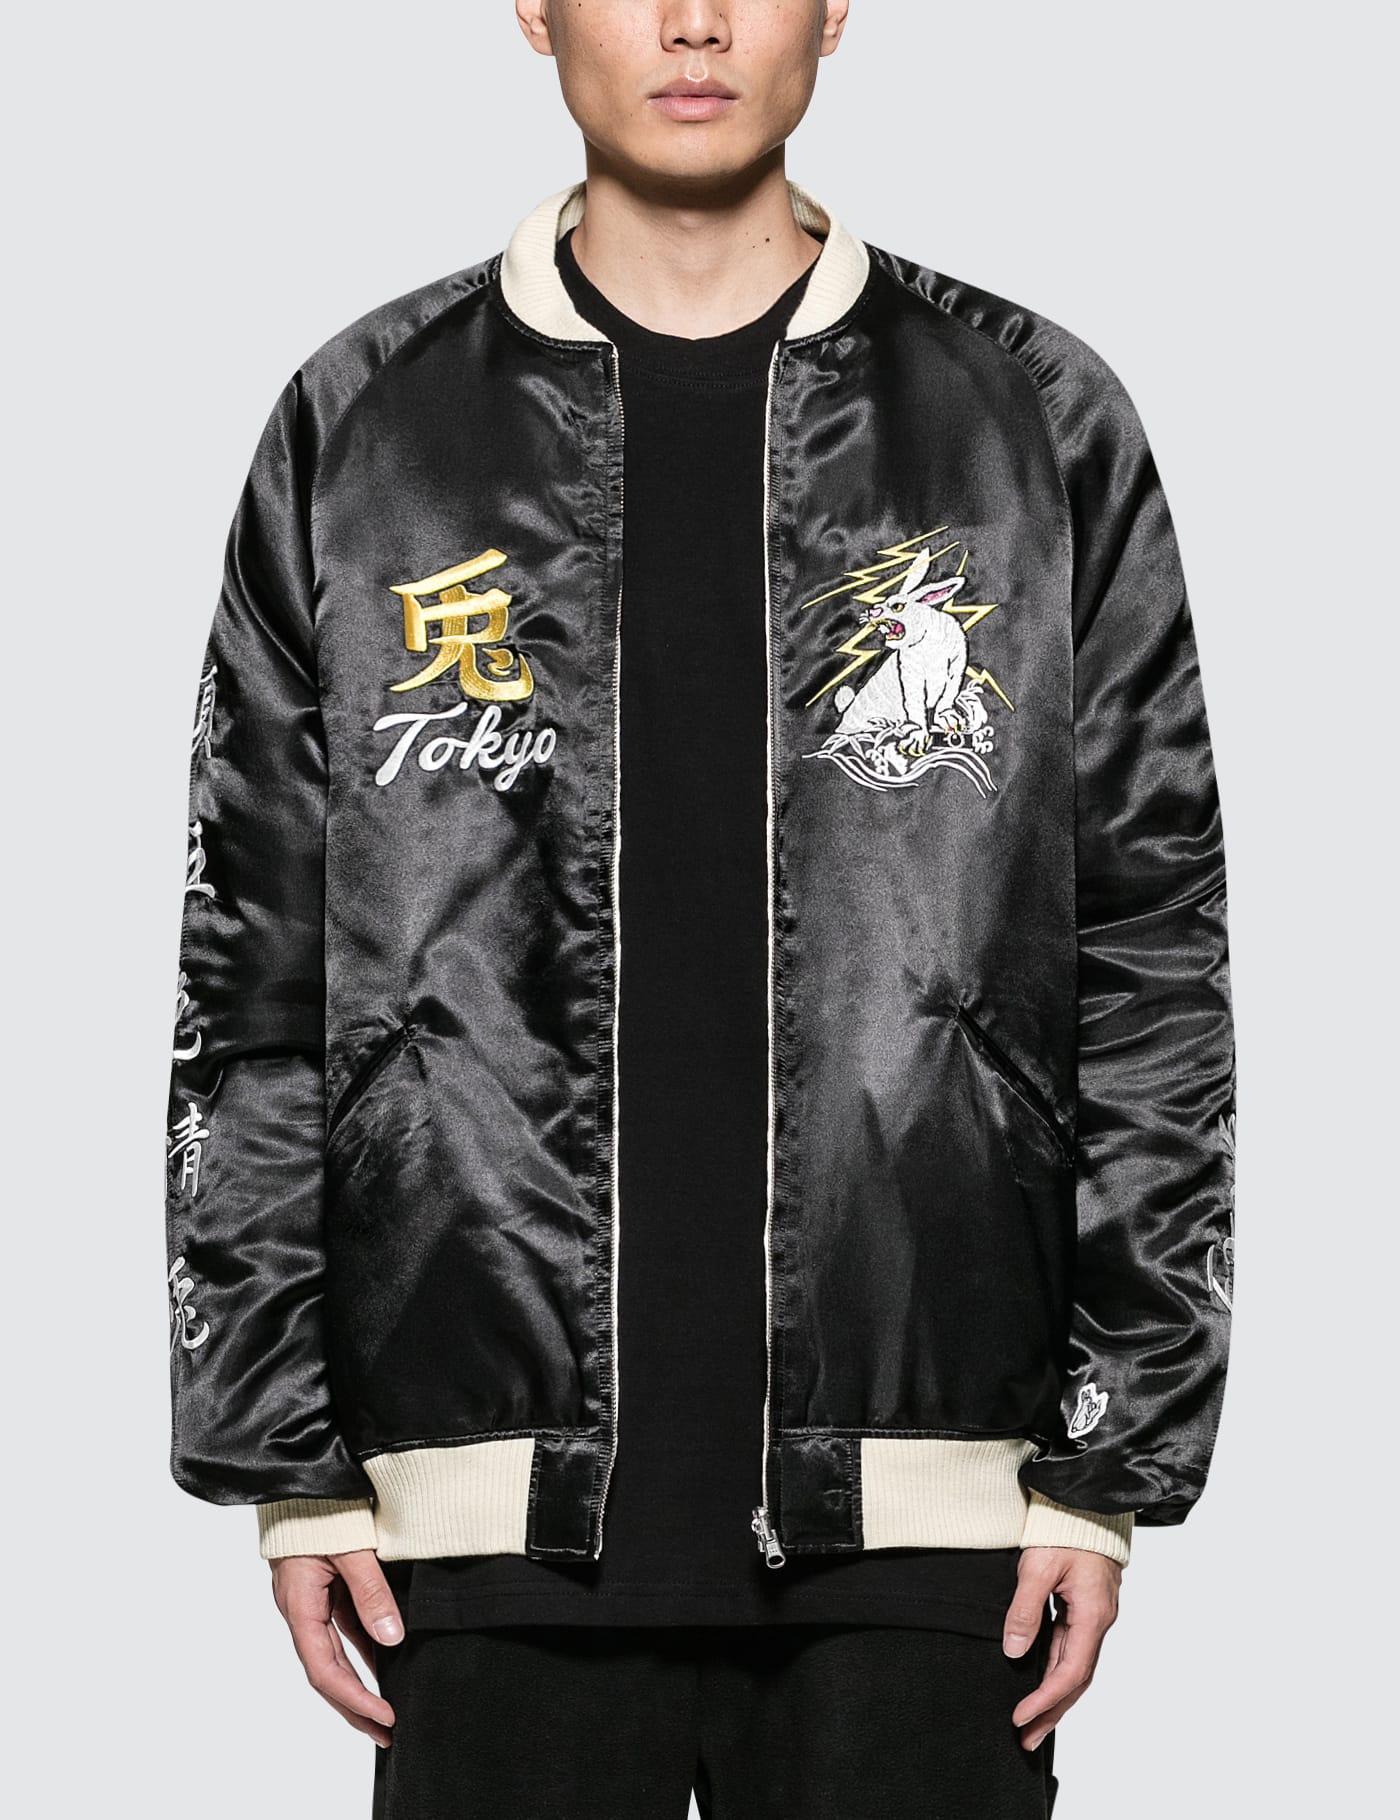 FR2 - Tokyo Souvenir Jacket | HBX - ハイプビースト(Hypebeast)が ...